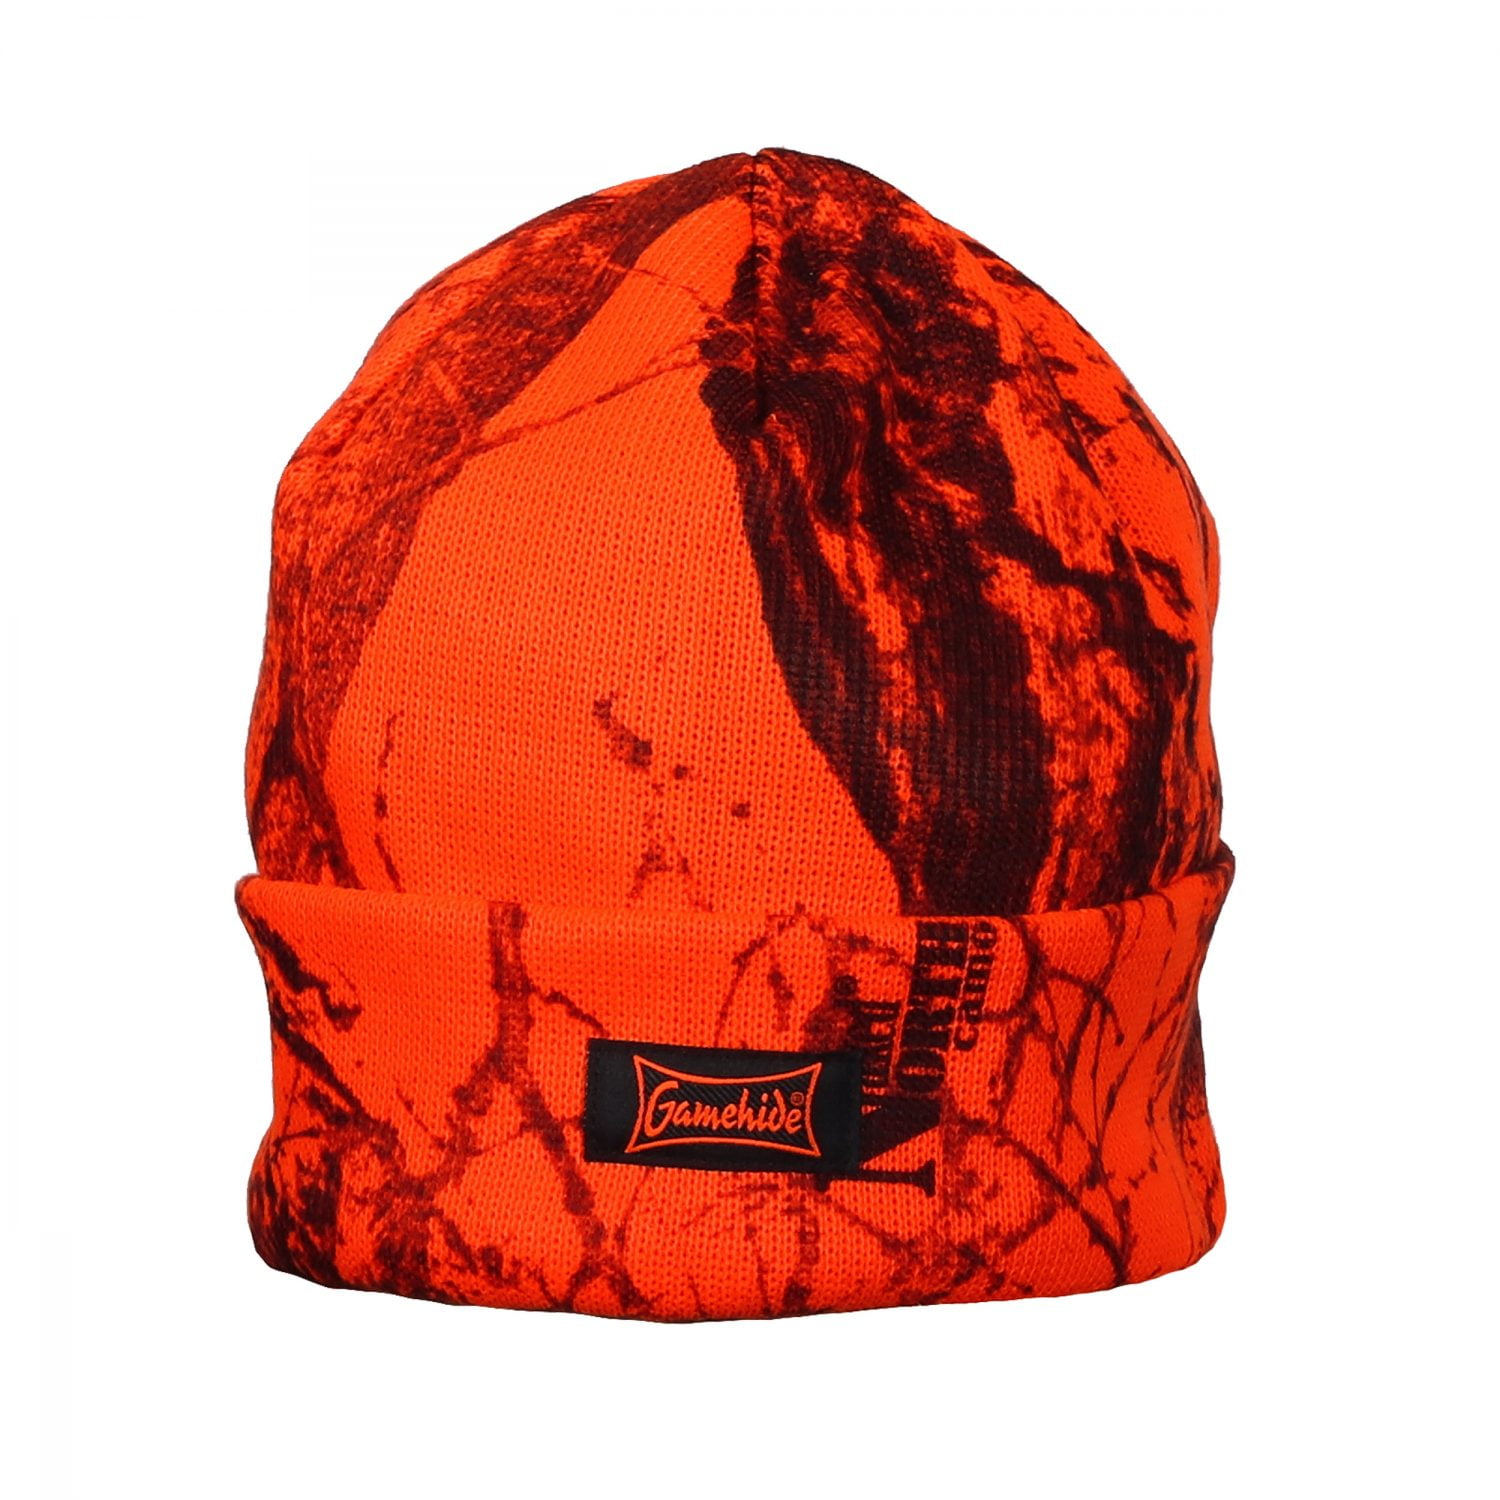 Gamehide Hat Fleece Lined Knit Insulated Blaze Orange Camo - OS -  Walmart.com